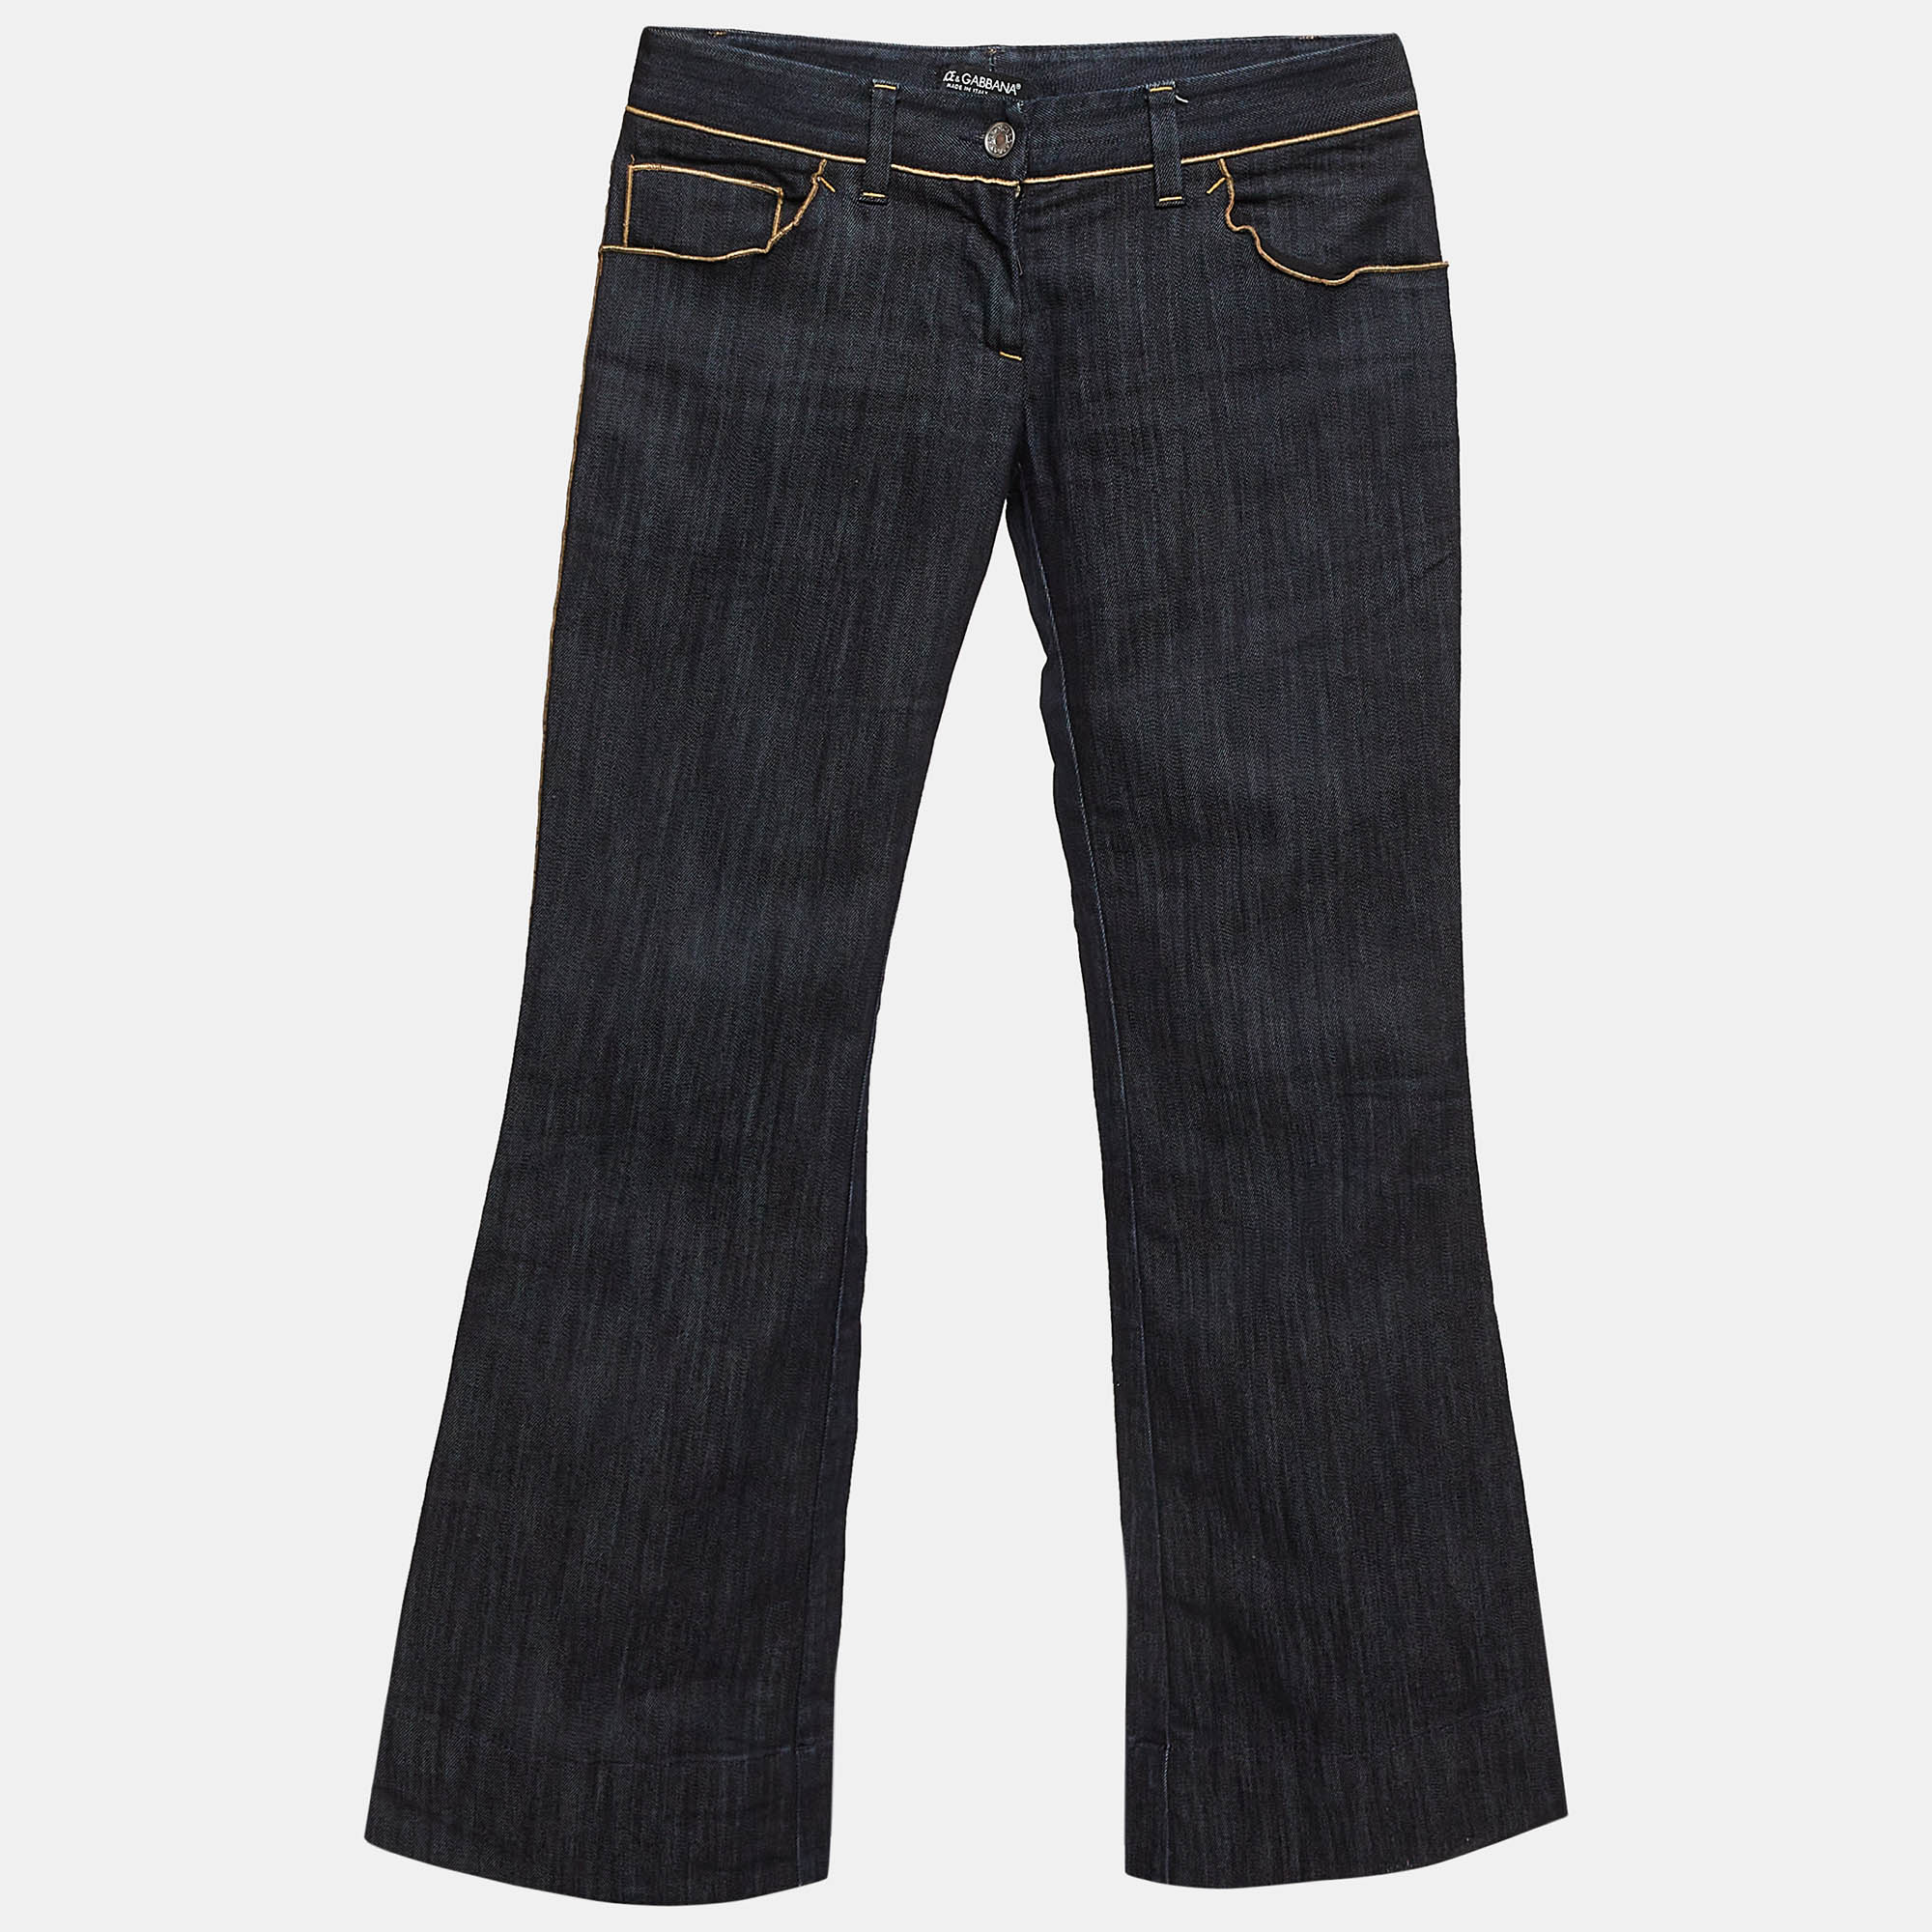 

Dolce & Gabbana Blue Denim Wide Leg Jeans S Waist 30"